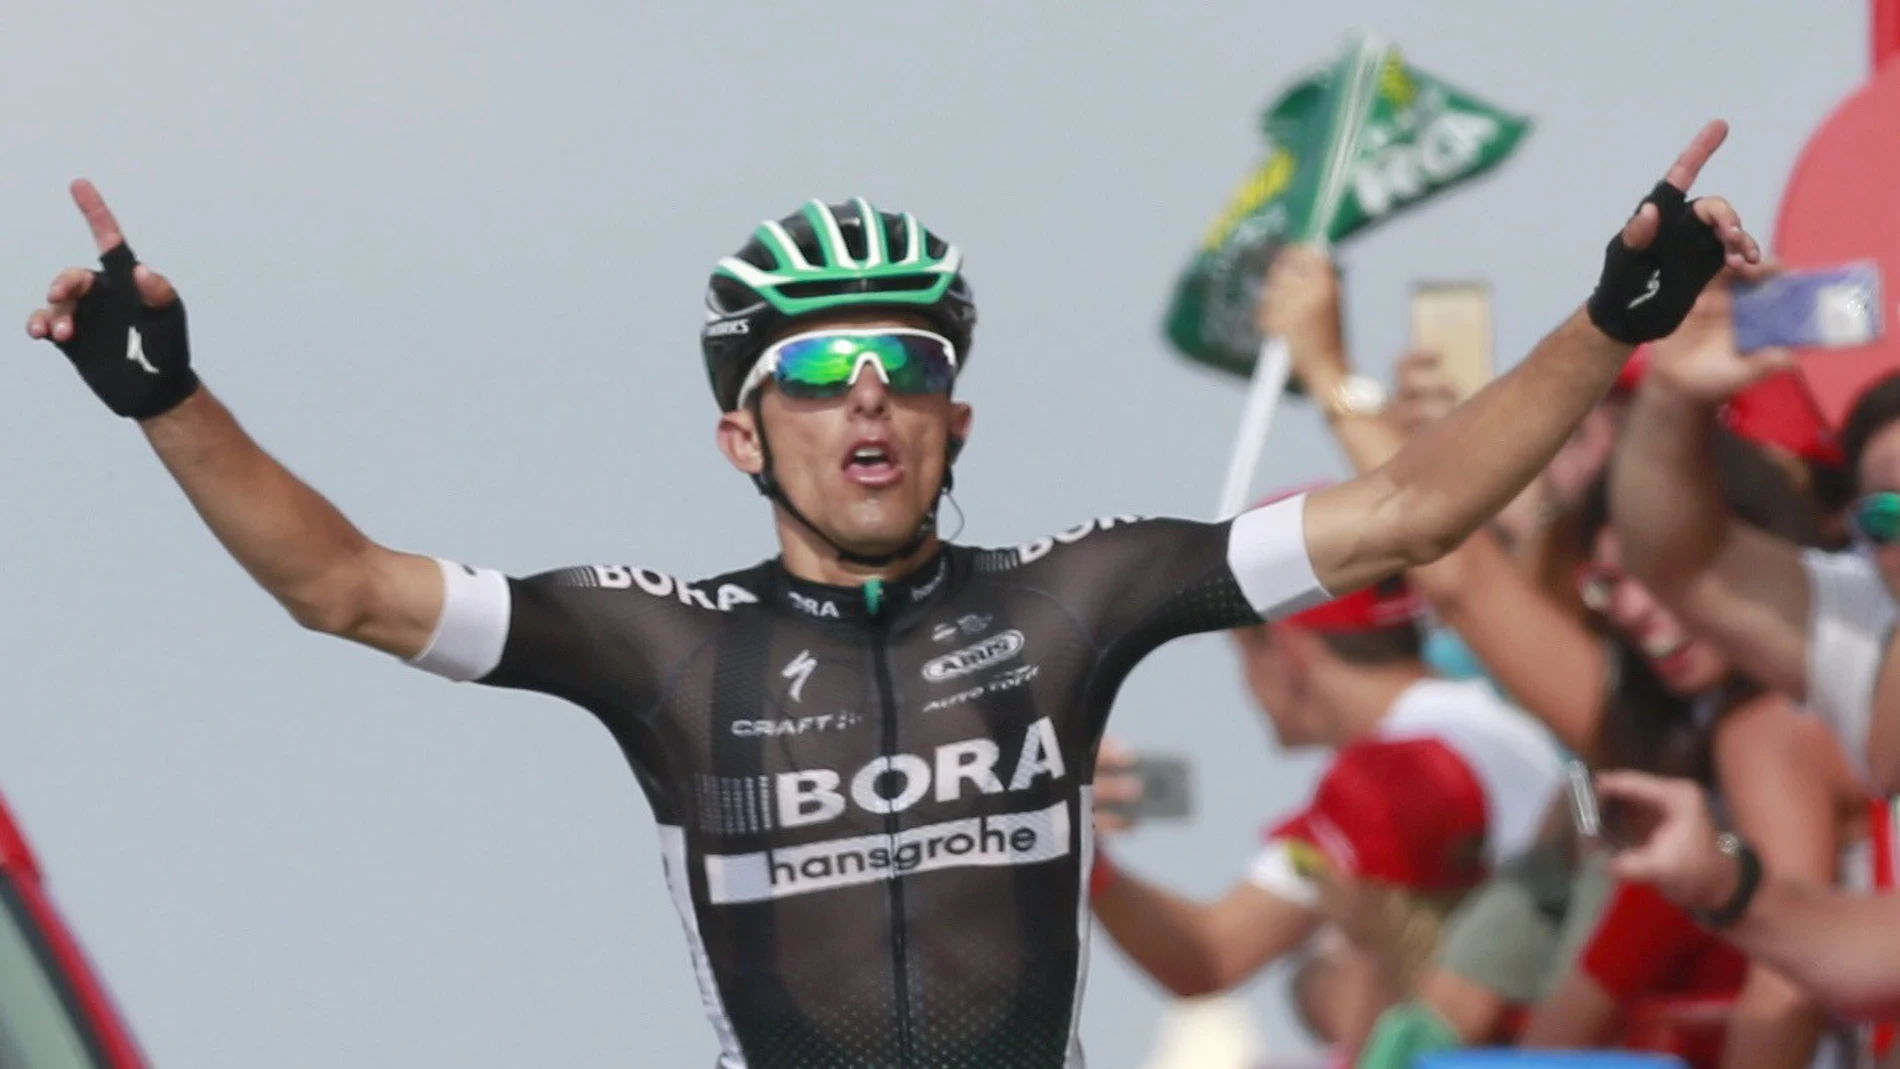 Majka celebra su triunfo en la etapa de la Vuelta